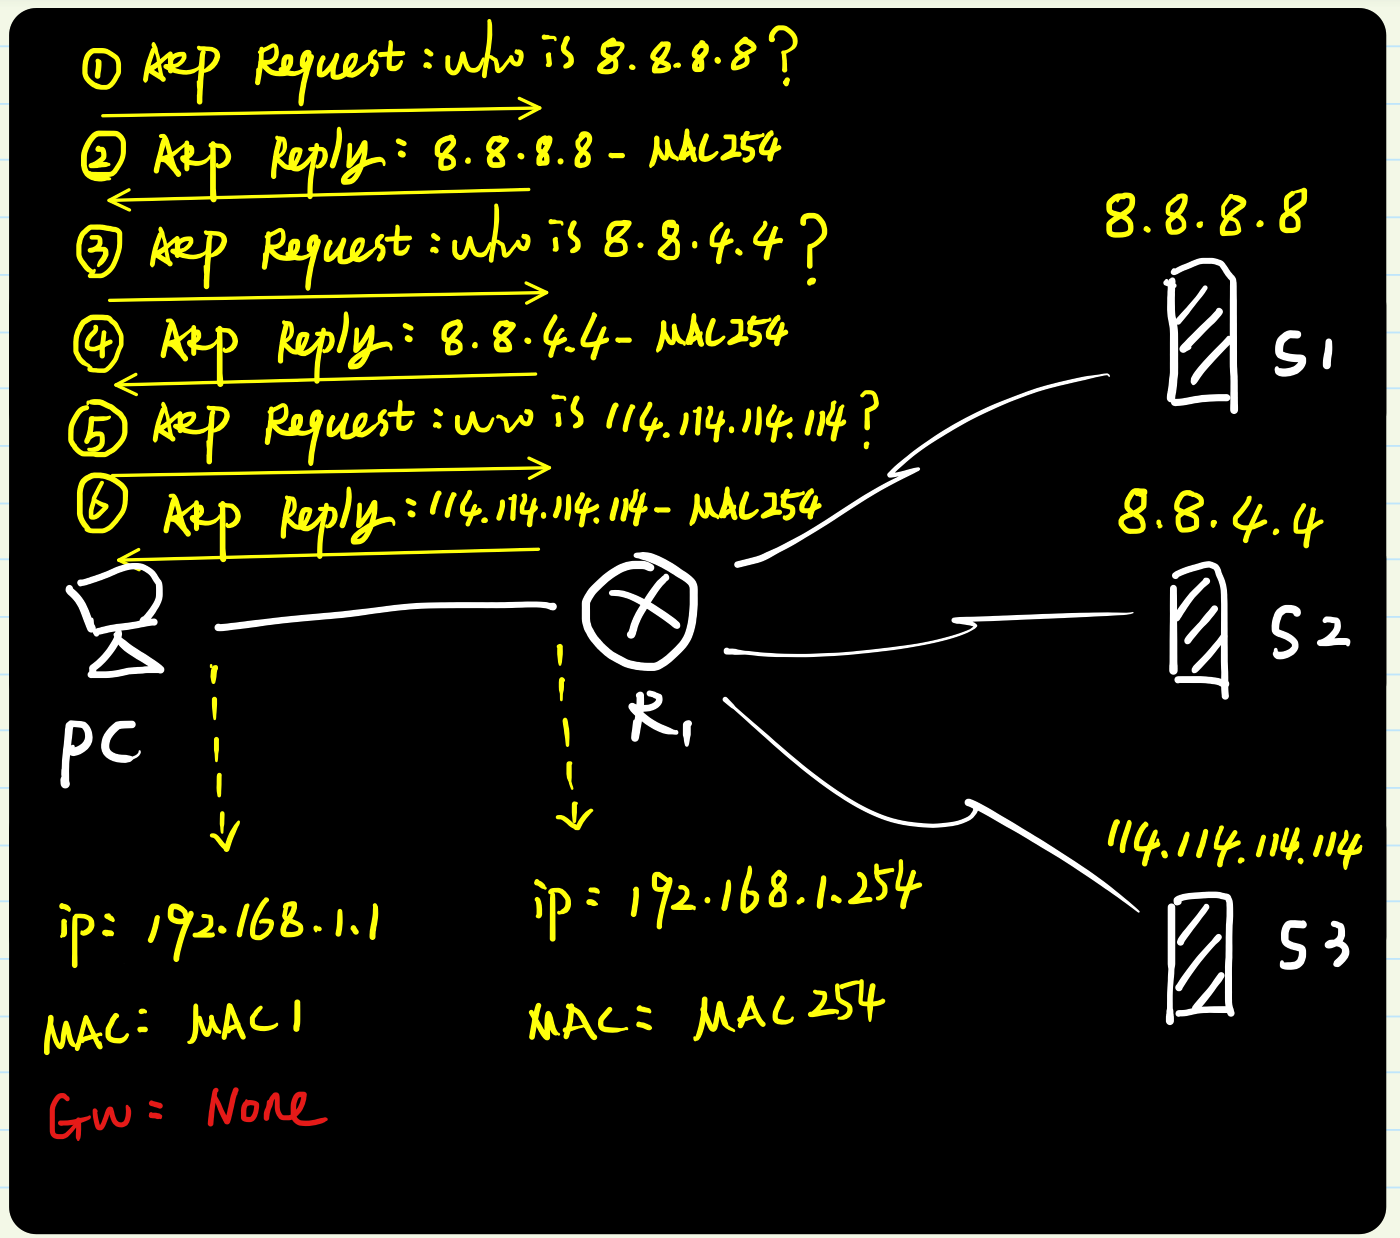 图解ARP协议（四）代理ARP原理与实践（“善意的欺骗”）_ARP协议_09